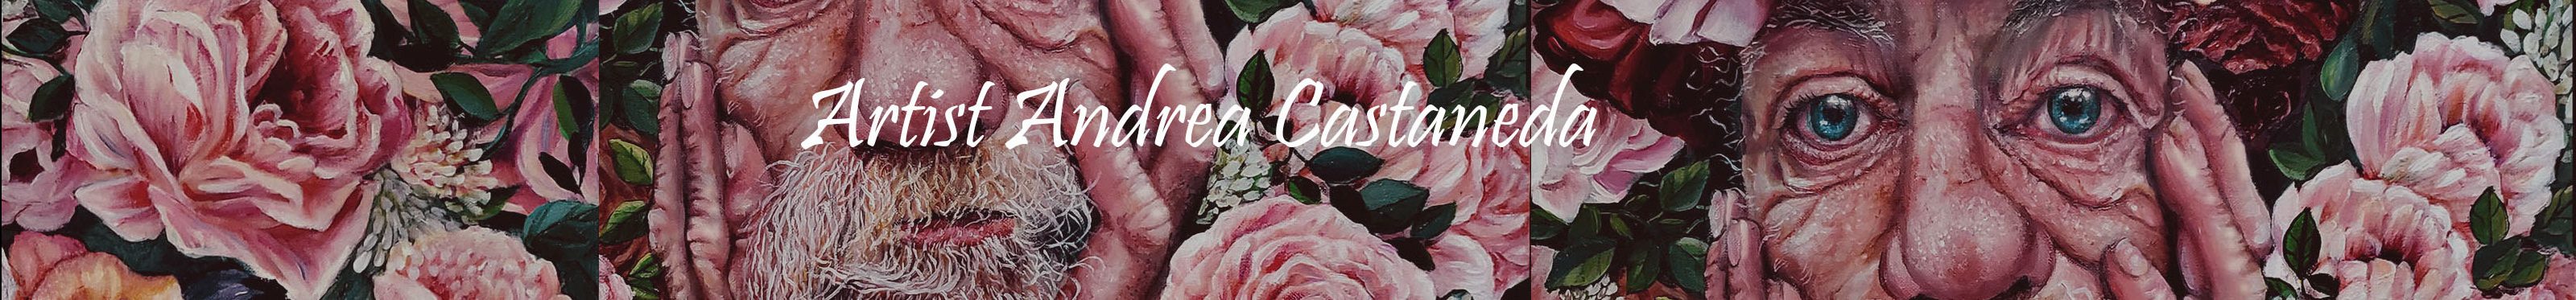 Andrea Castaneda's profile banner